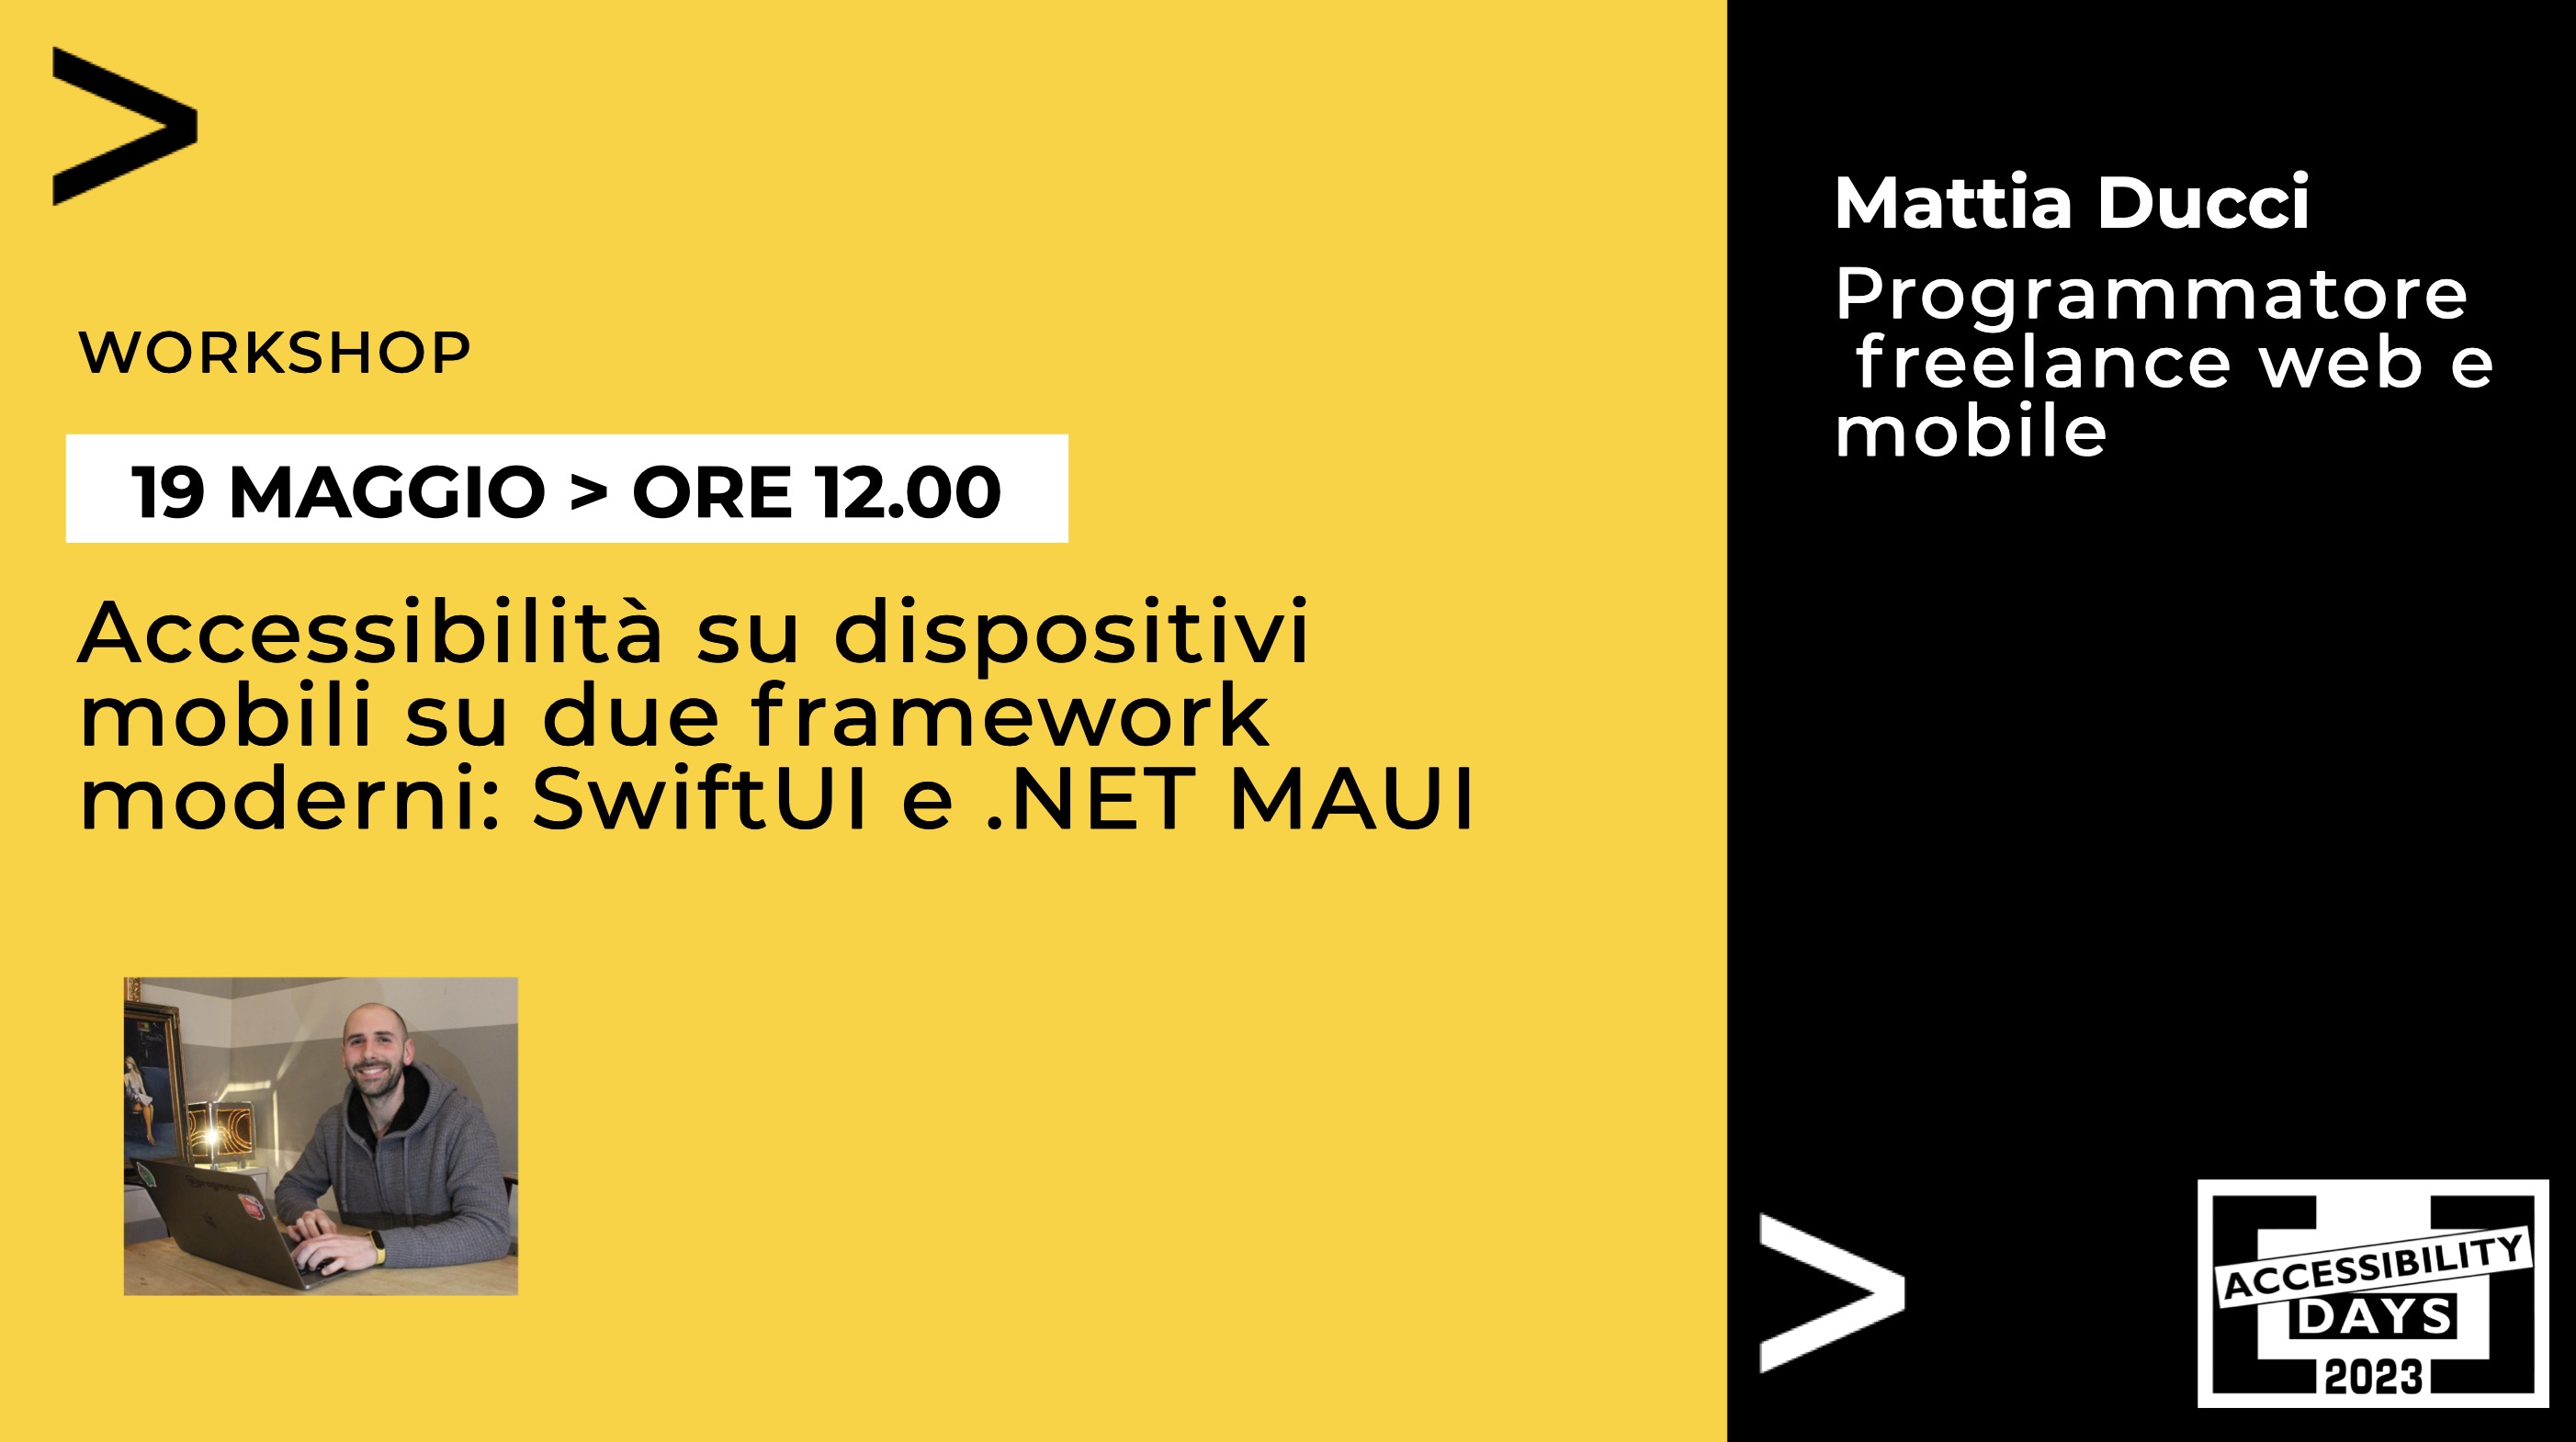 Immagine di copertina del workshop che mostra il titolo del webinar e presenta il relatore, Mattia, come sviluppatore freelance web e mobile